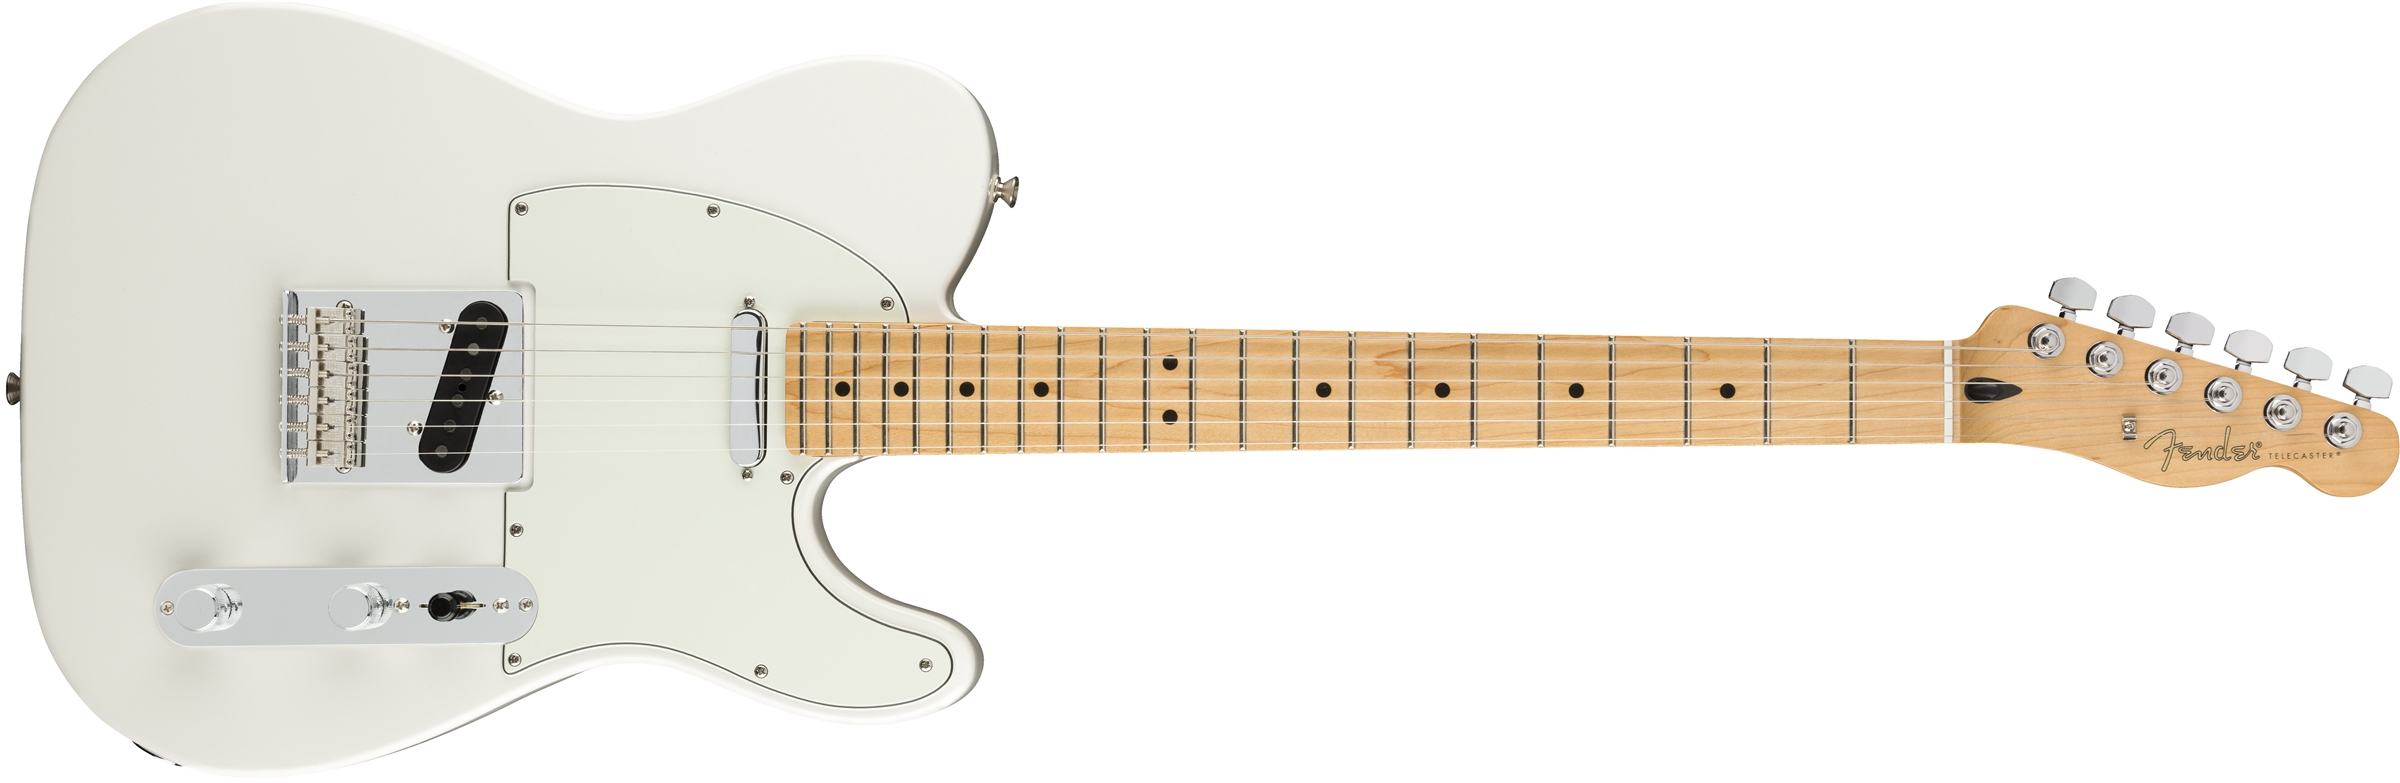 Fender Tele Player Mex Mn - Polar White - Televorm elektrische gitaar - Variation 1